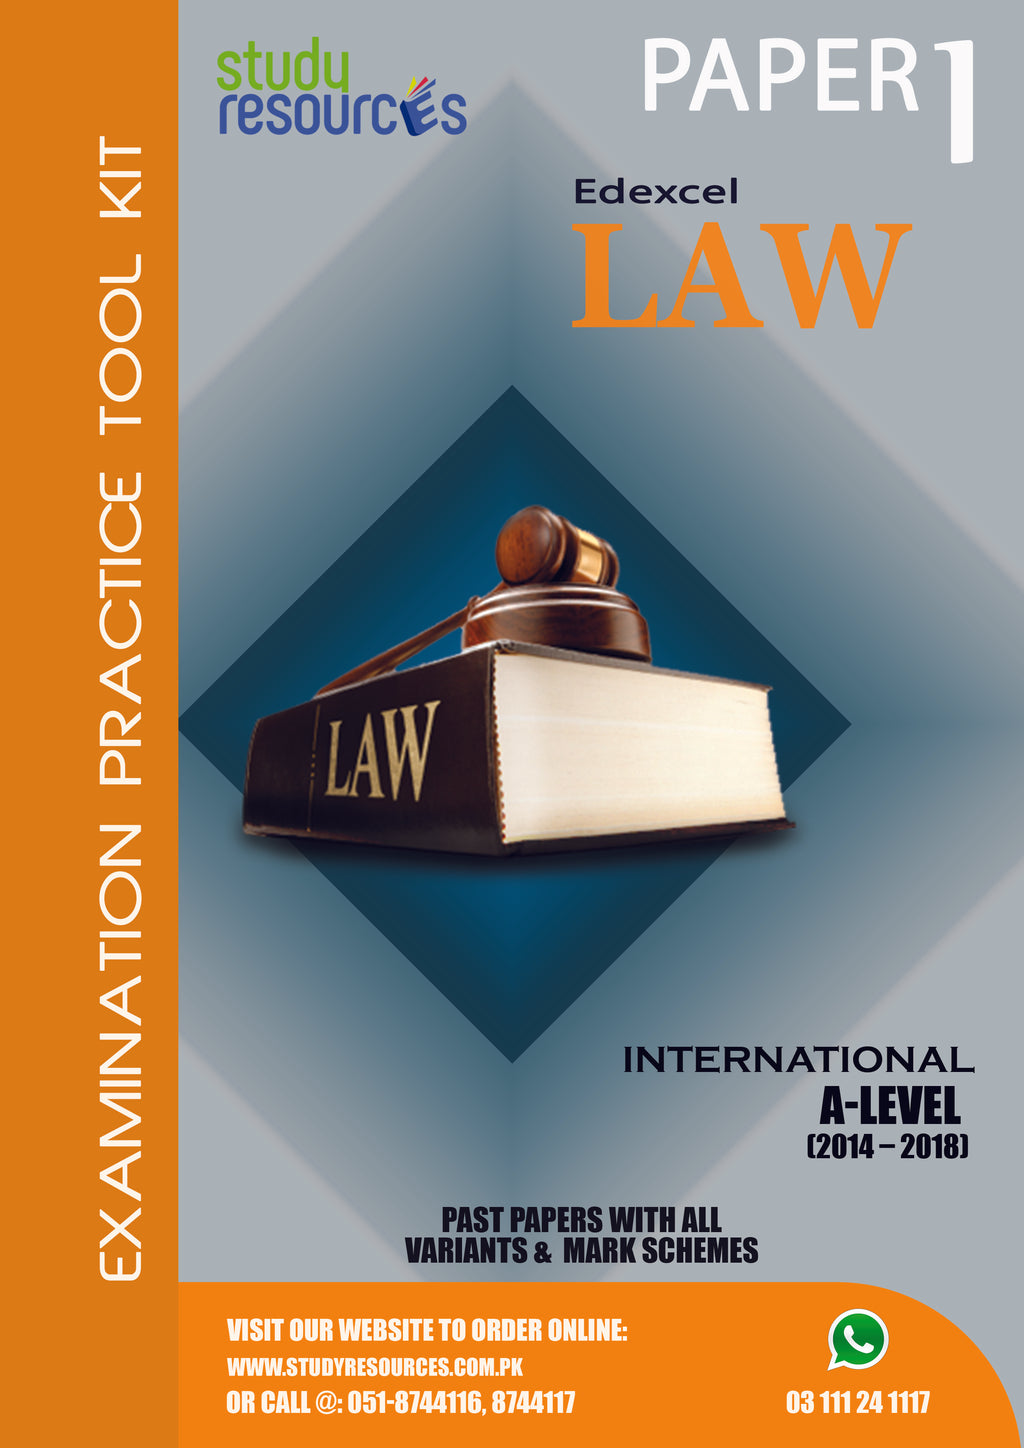 Edexcel A-Level Law P-1 Past Papers (2014-2018)